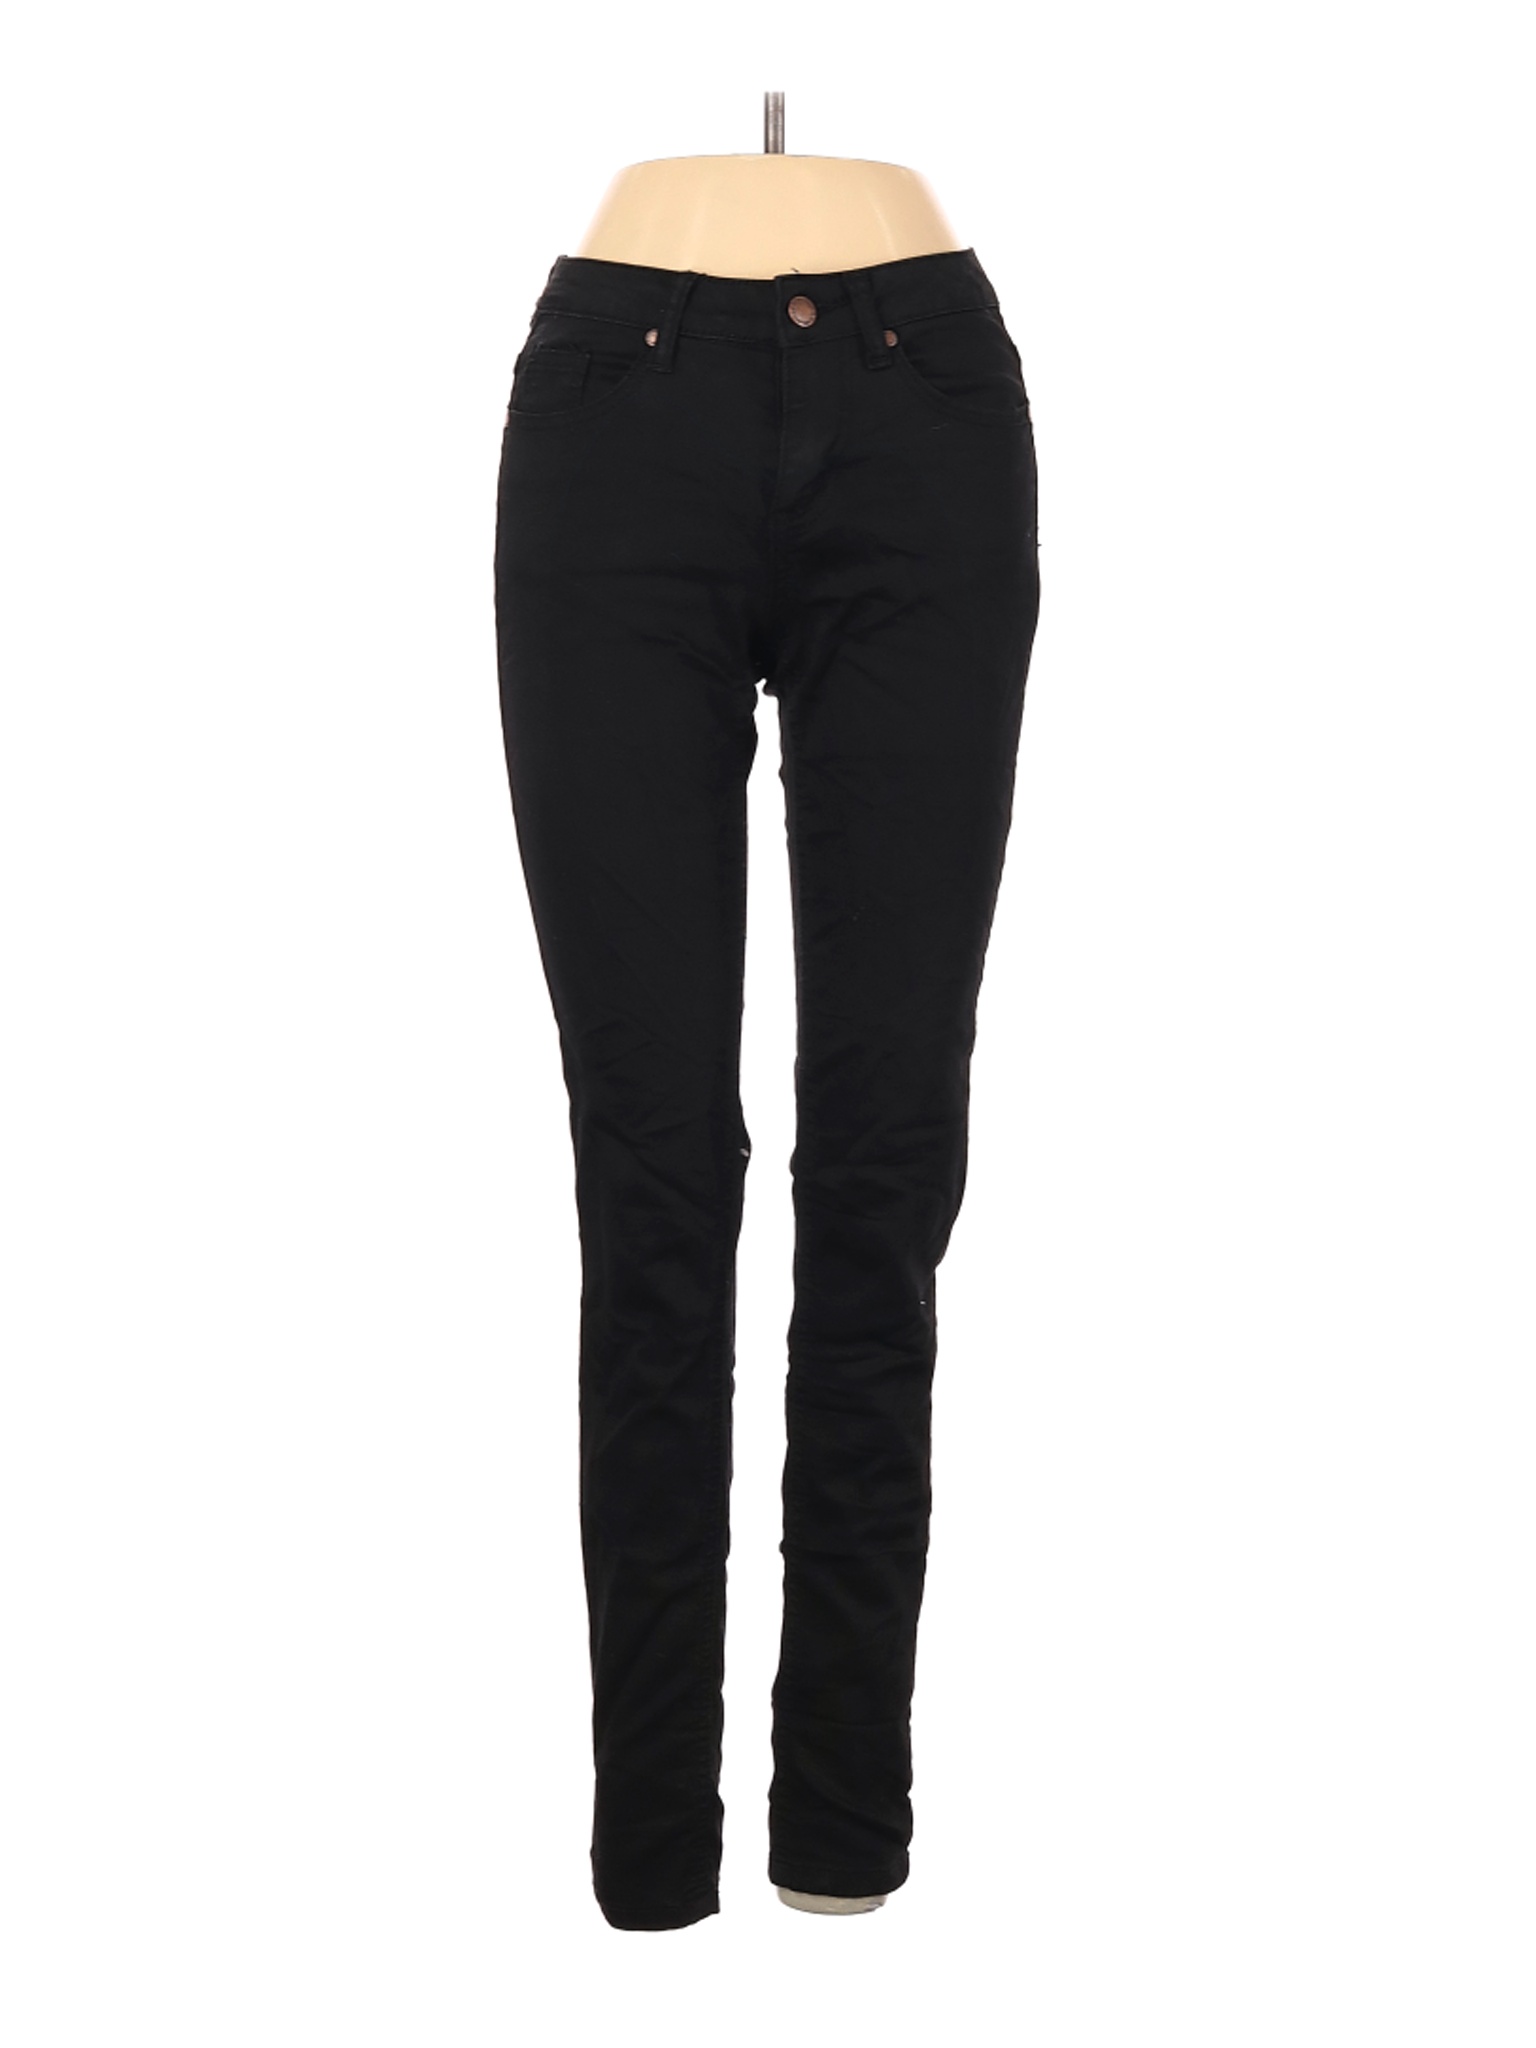 Salvaje Jeans Women Black Jeans 1 | eBay